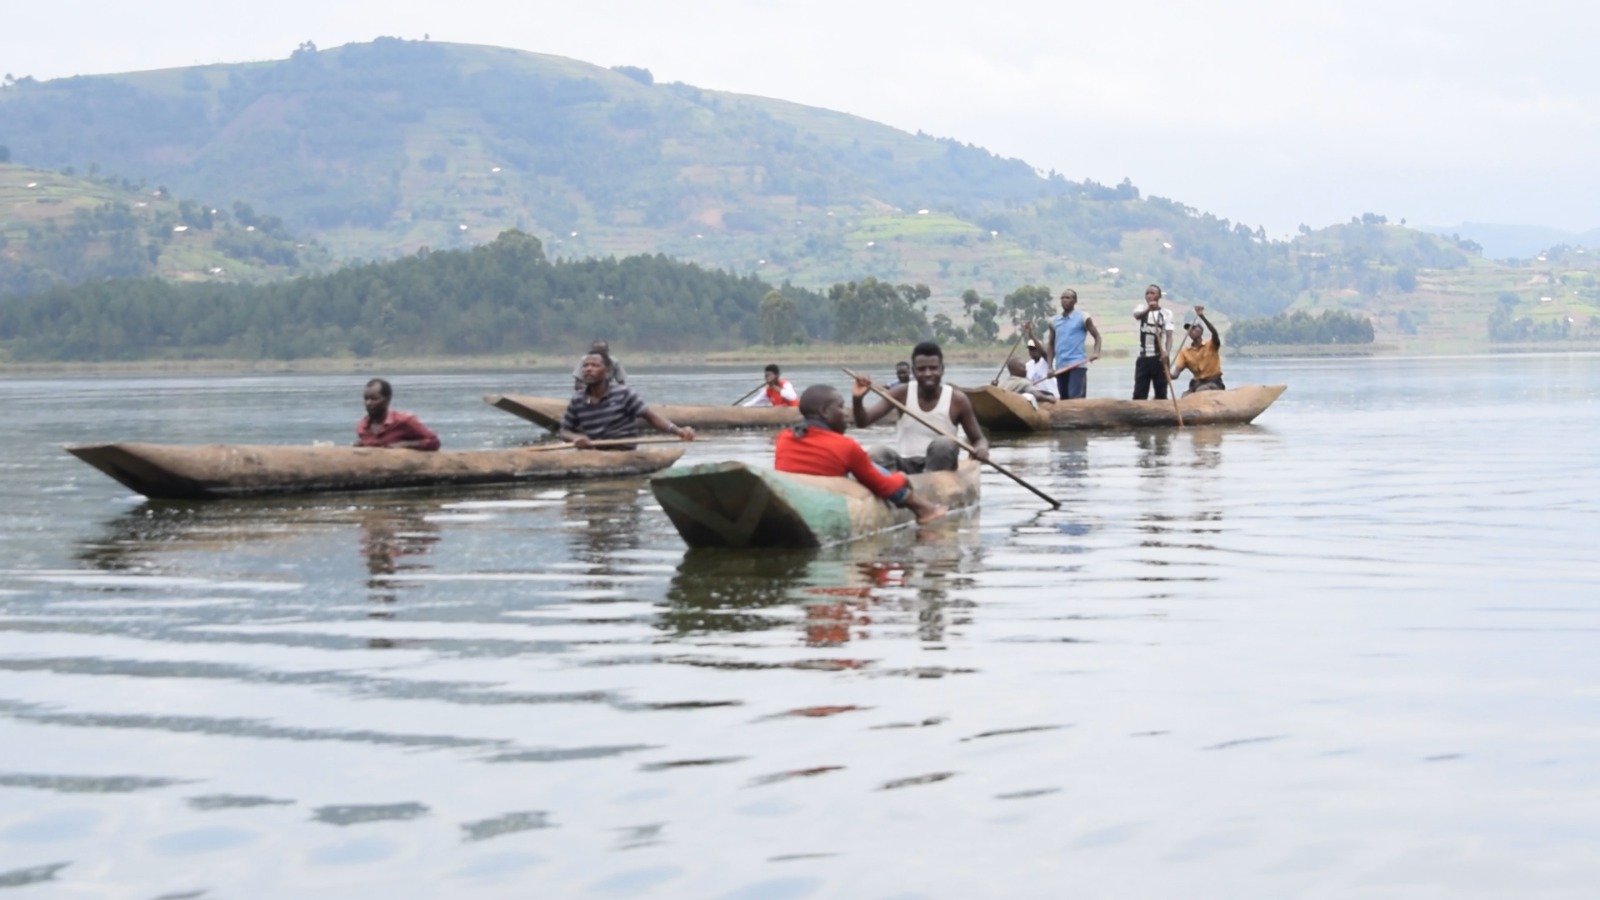 Lake Bunyonyi's Beauty Blighted by Tragedy